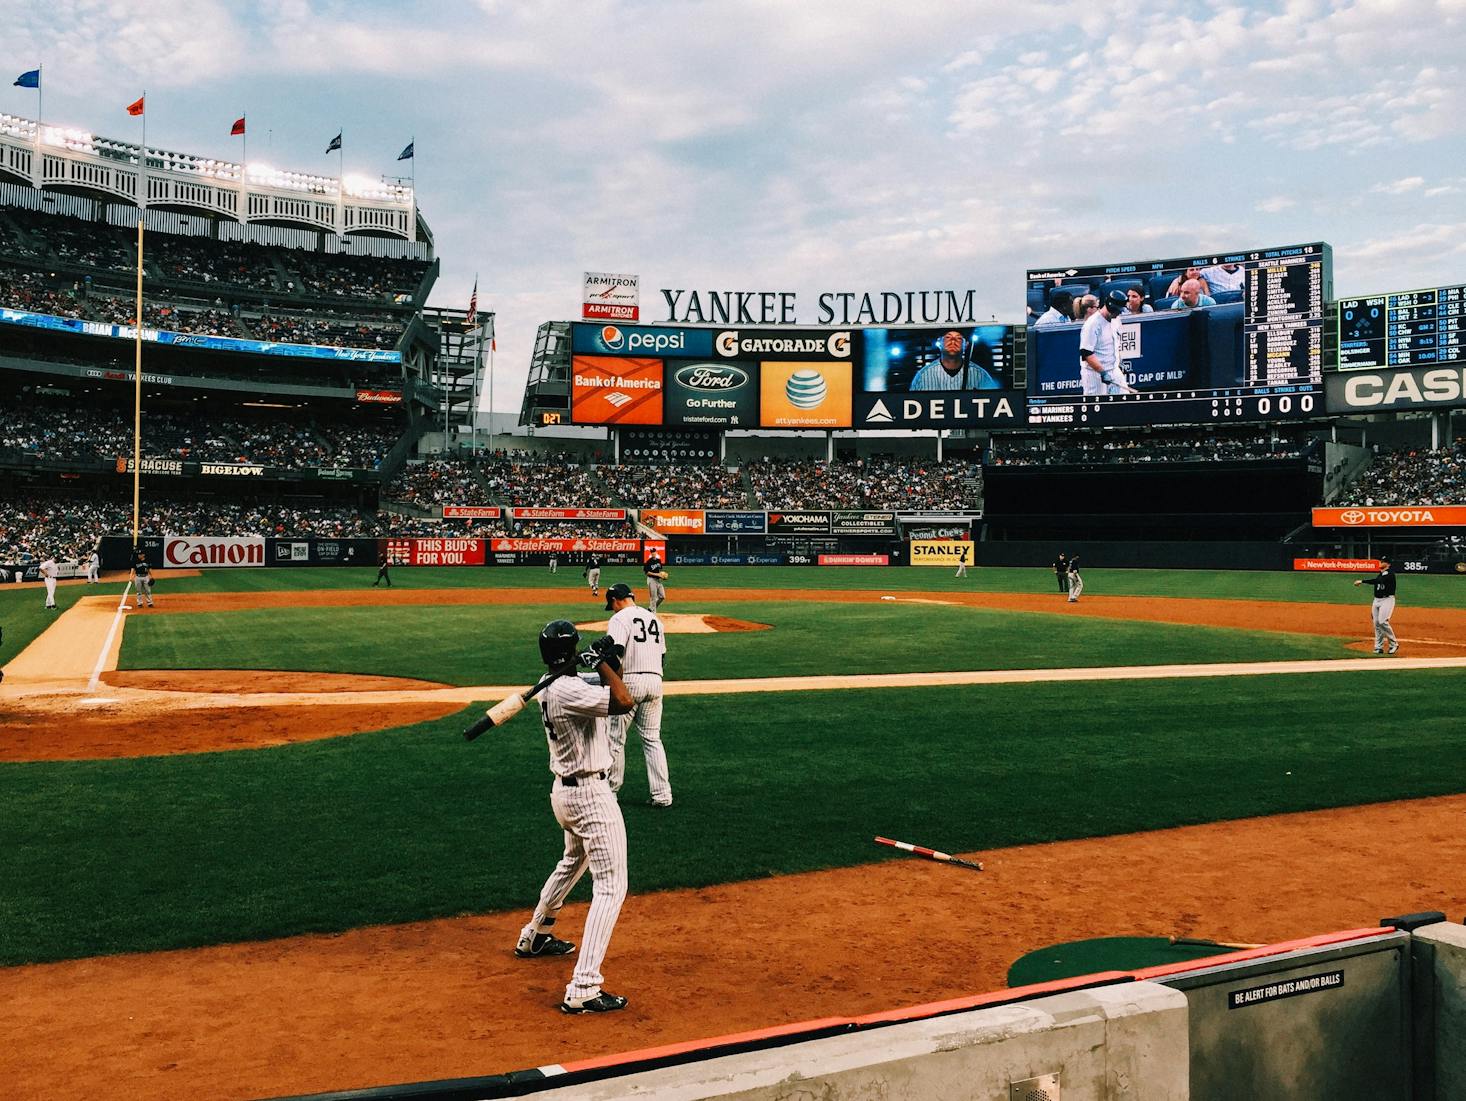 Baseball game at Yankee Stadium, New York